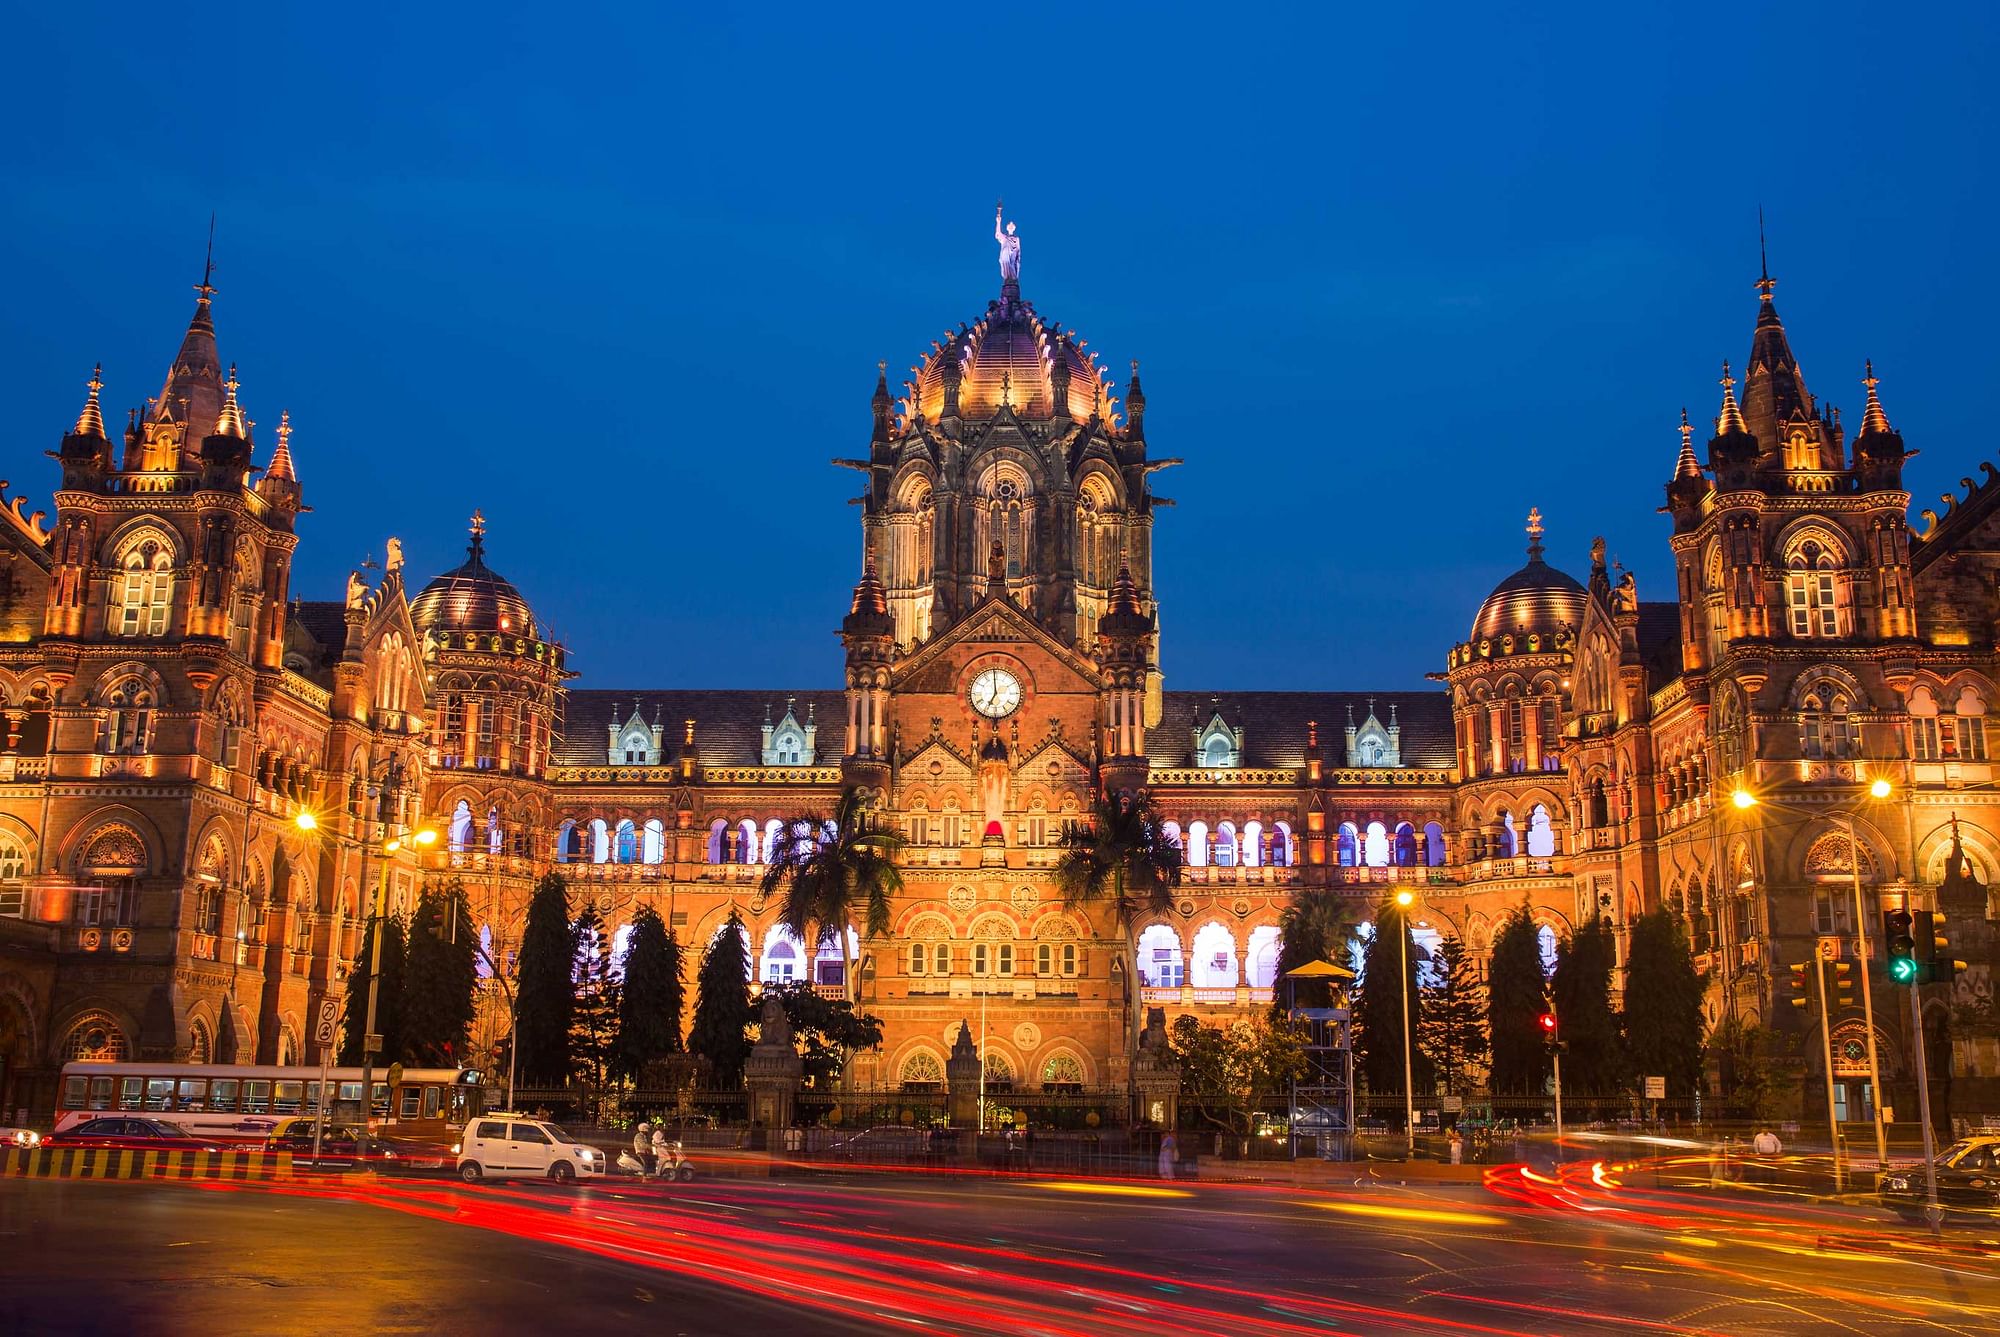 mumbai tourist place photos